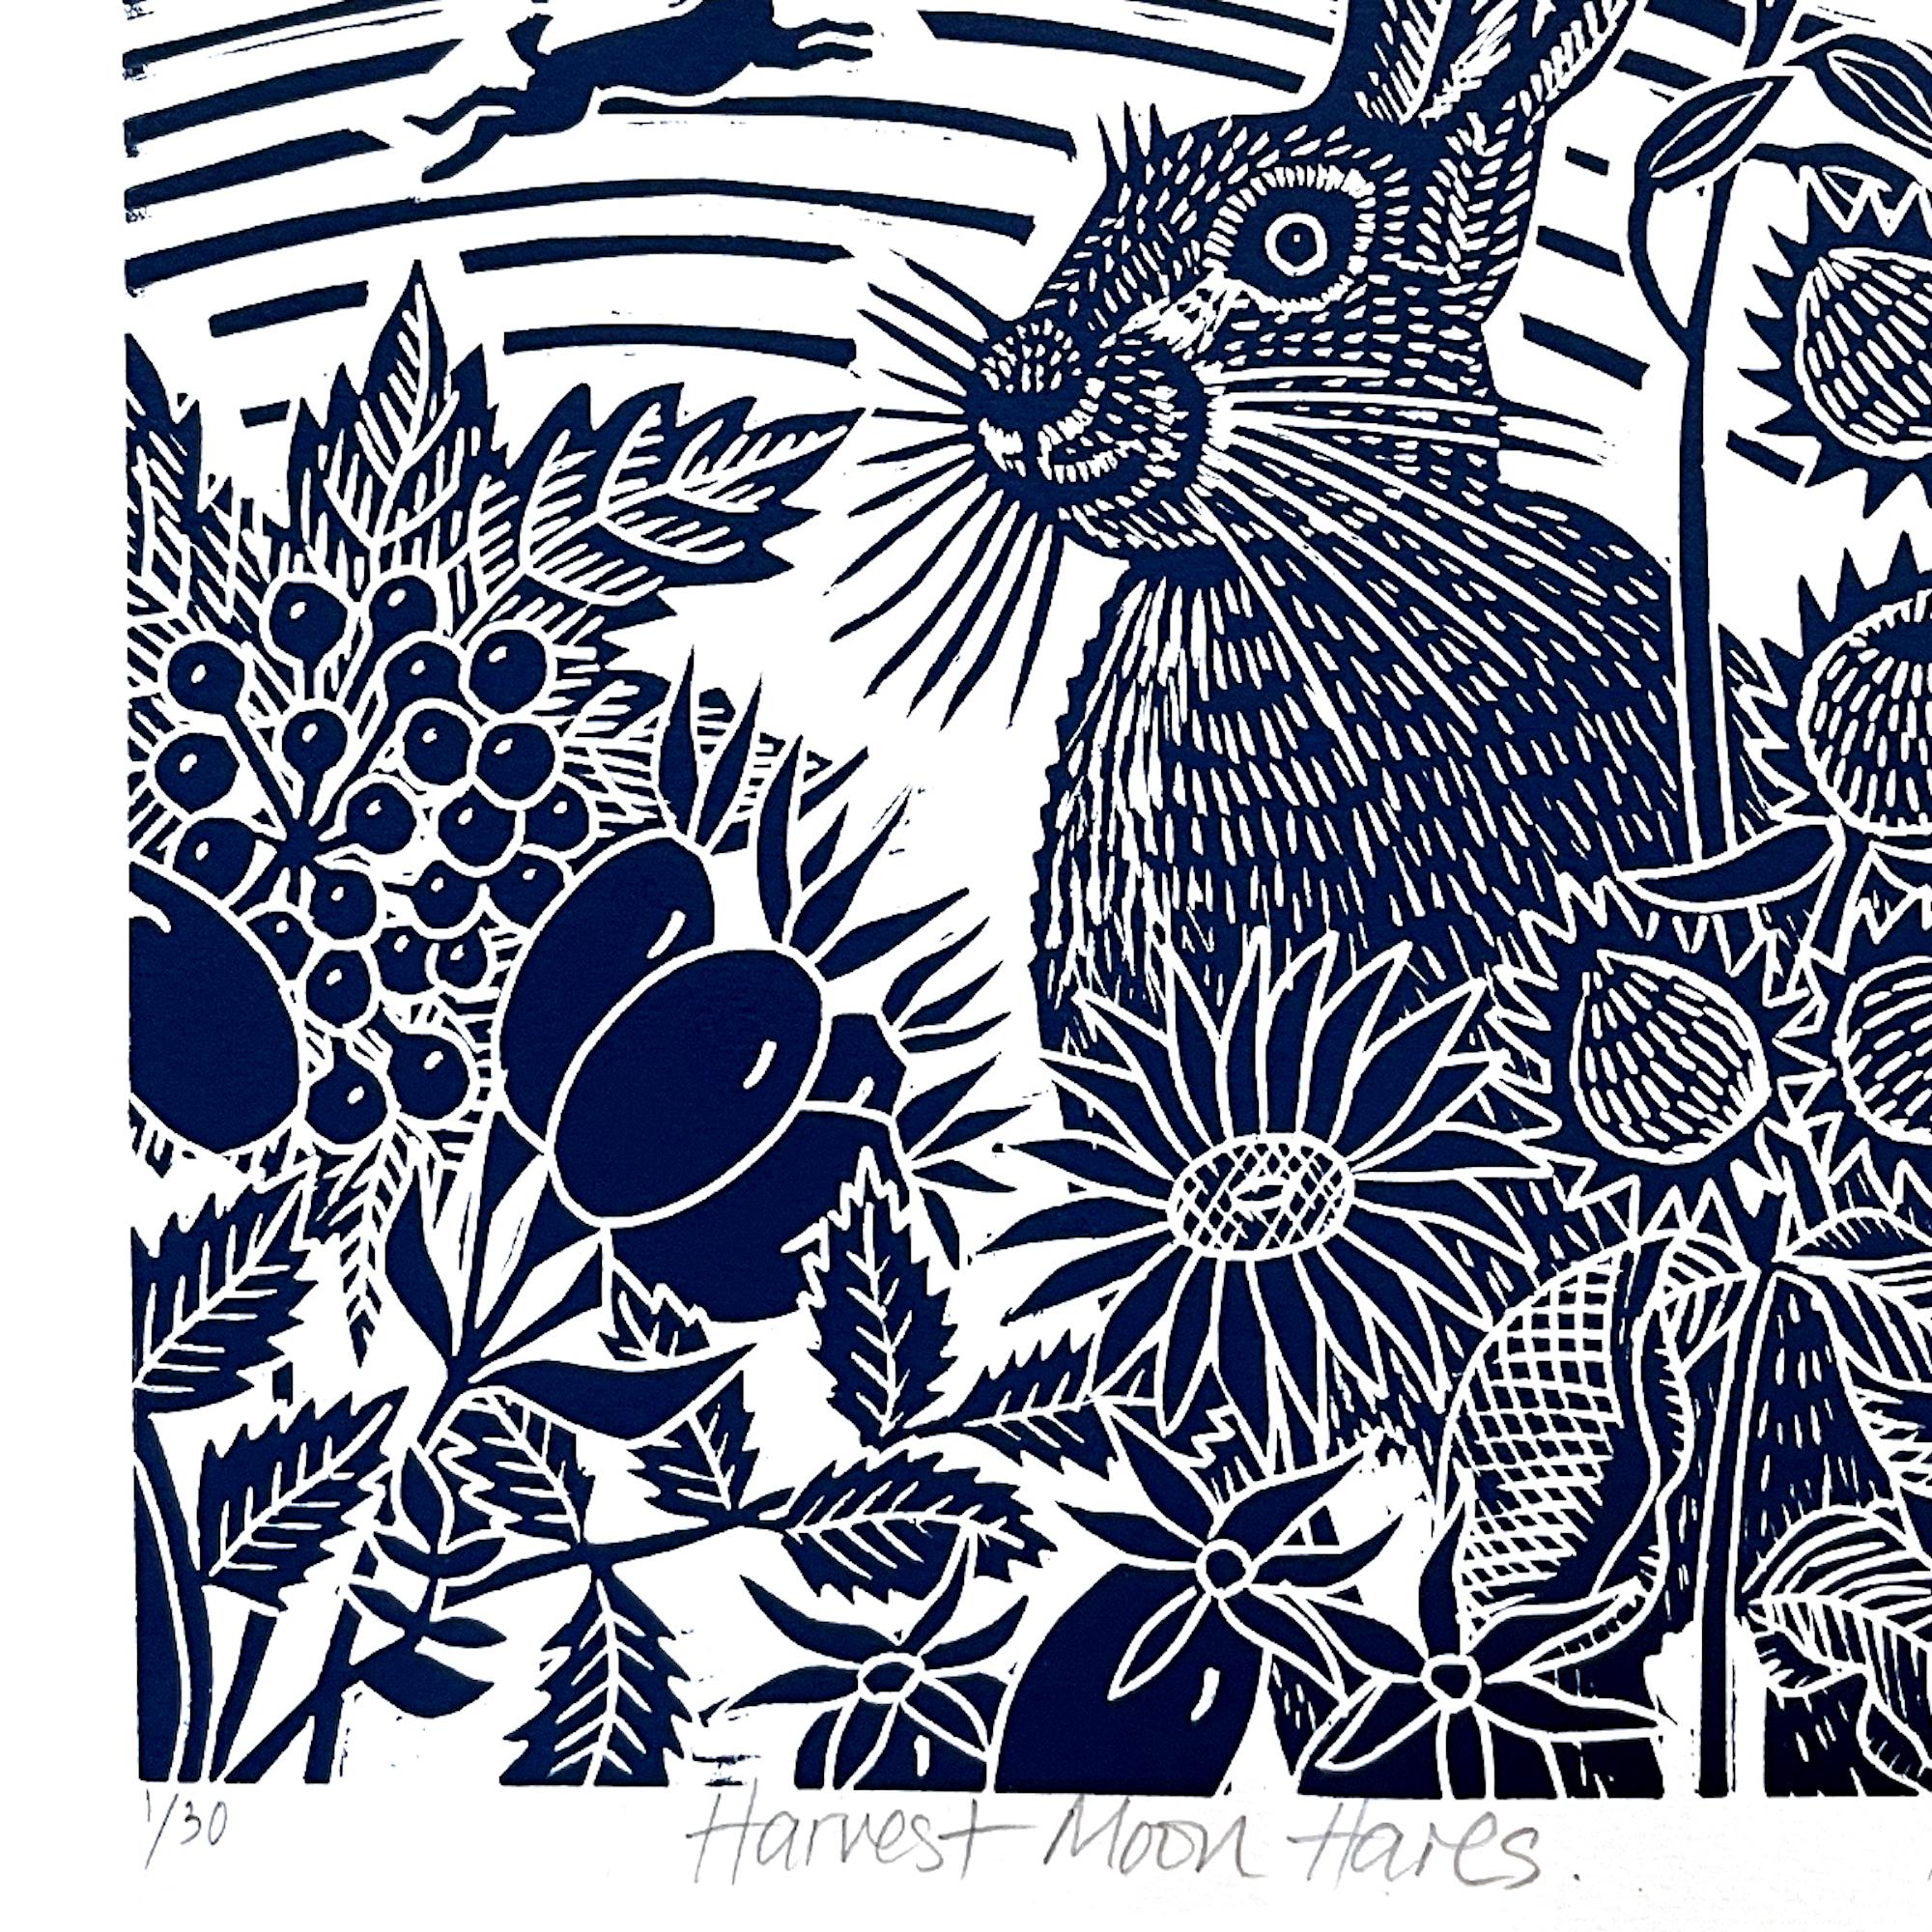 Harvest Moon Hares ist ein Linoldruck in limitierter Auflage, der ein Hasenpaar auf den Feldern unter dem Erntemond zeigt. Wilde Beeren und Hagebutten zeichnen sich im Vordergrund ab. Gedruckt in Indigoblau
Kate Heiss ist bei Wychwood Art online und